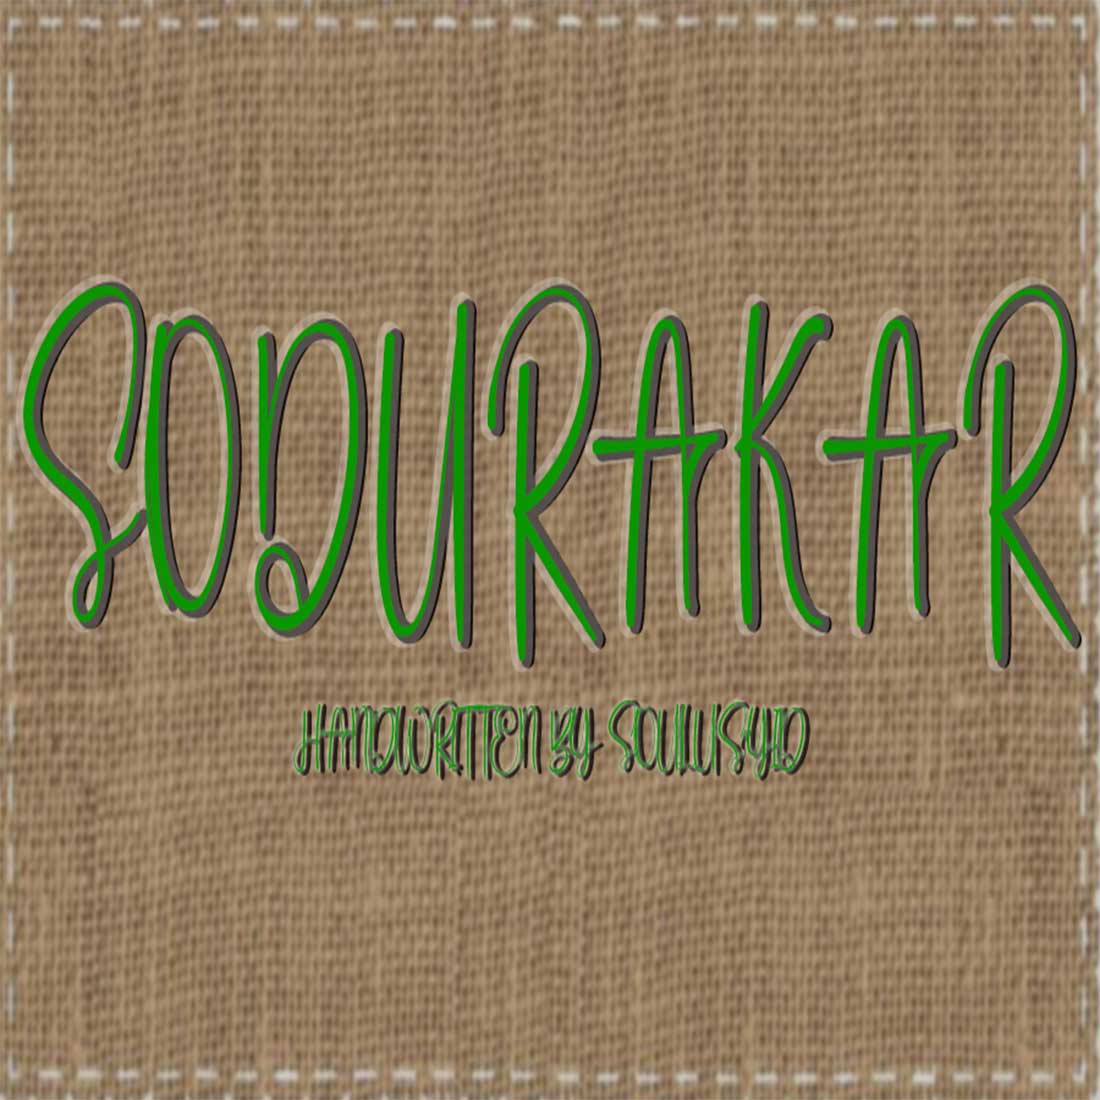 Soduraker cover image.